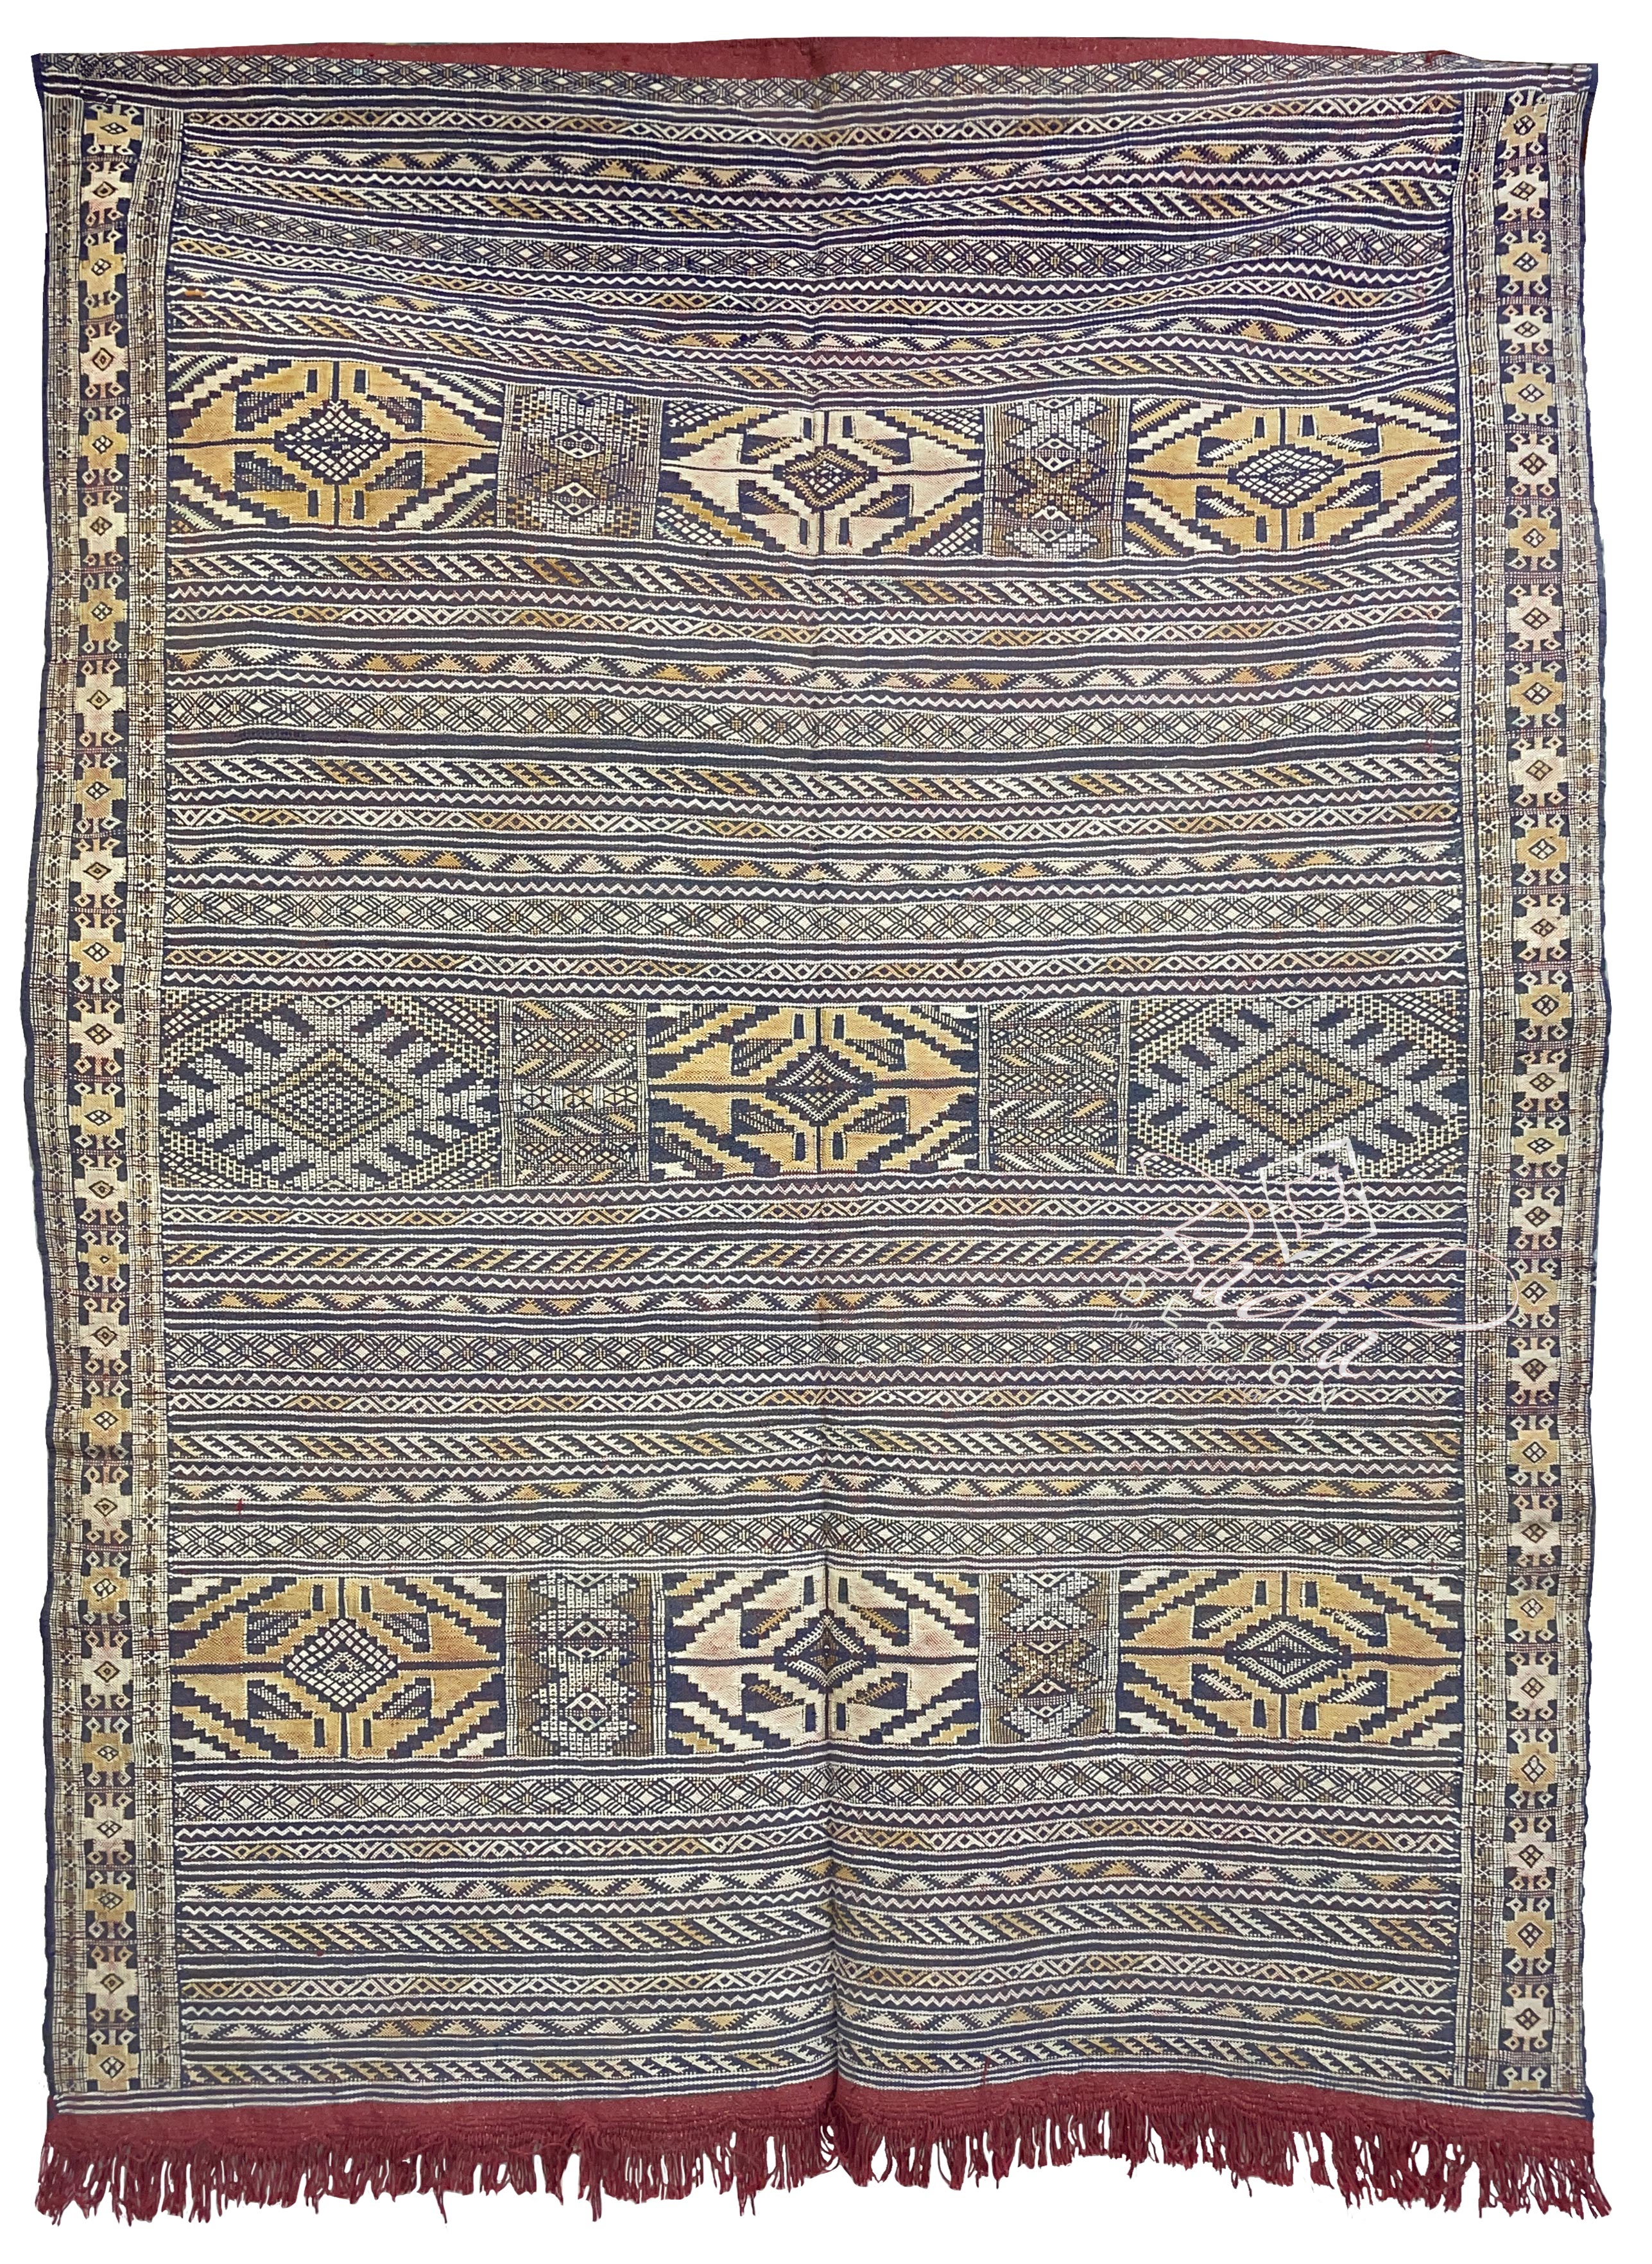 moroccan-kilim-rugs-for-bohemian-interiors-r0240.jpg